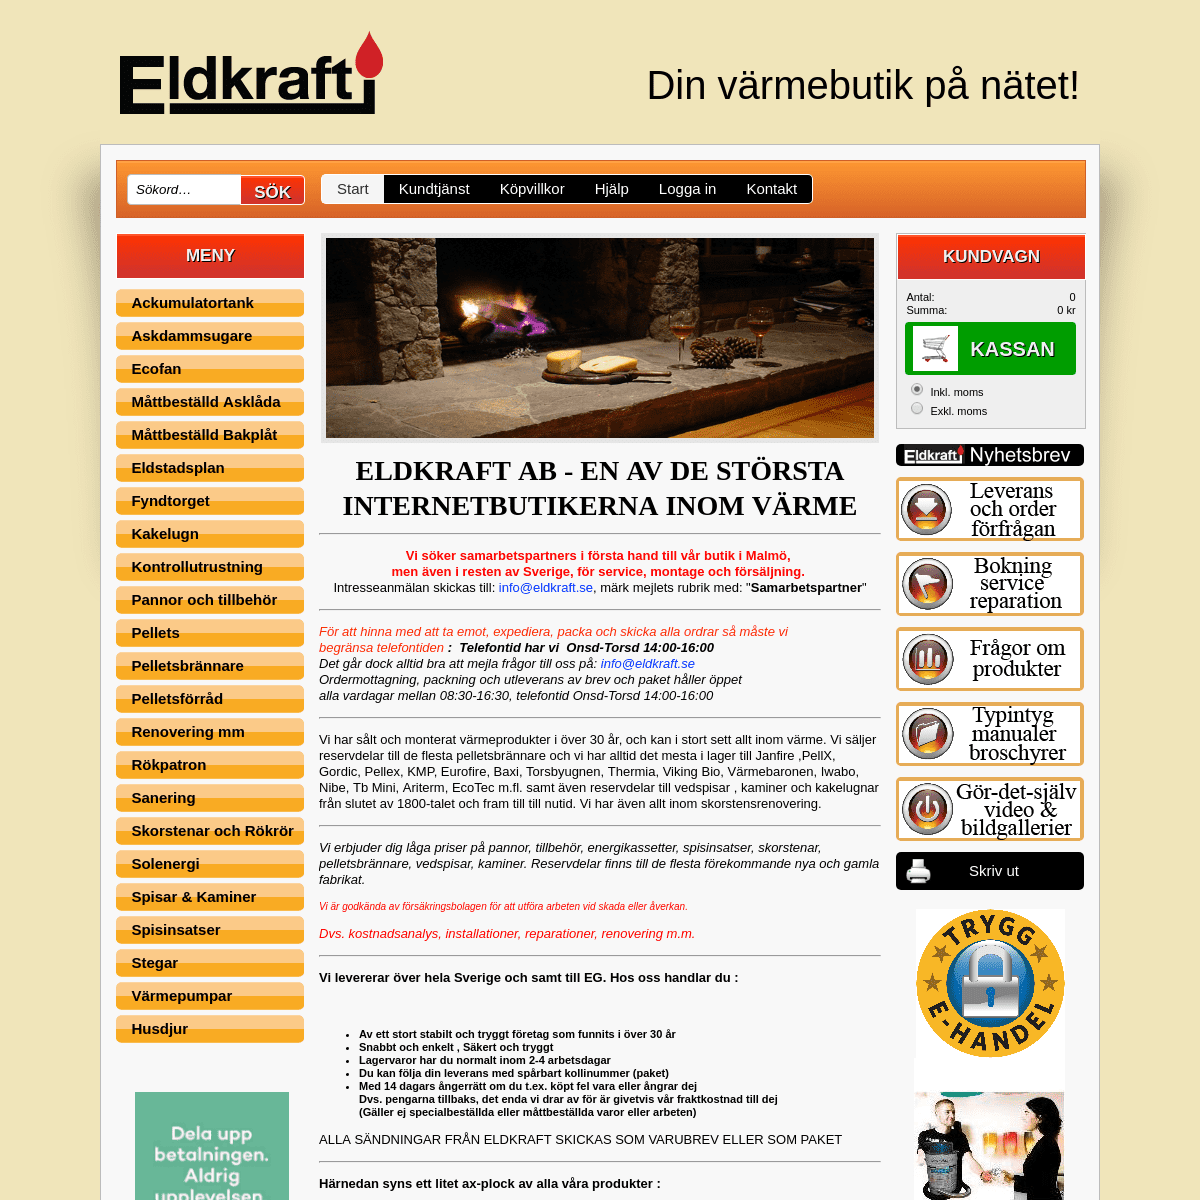 A complete backup of eldkraft.se